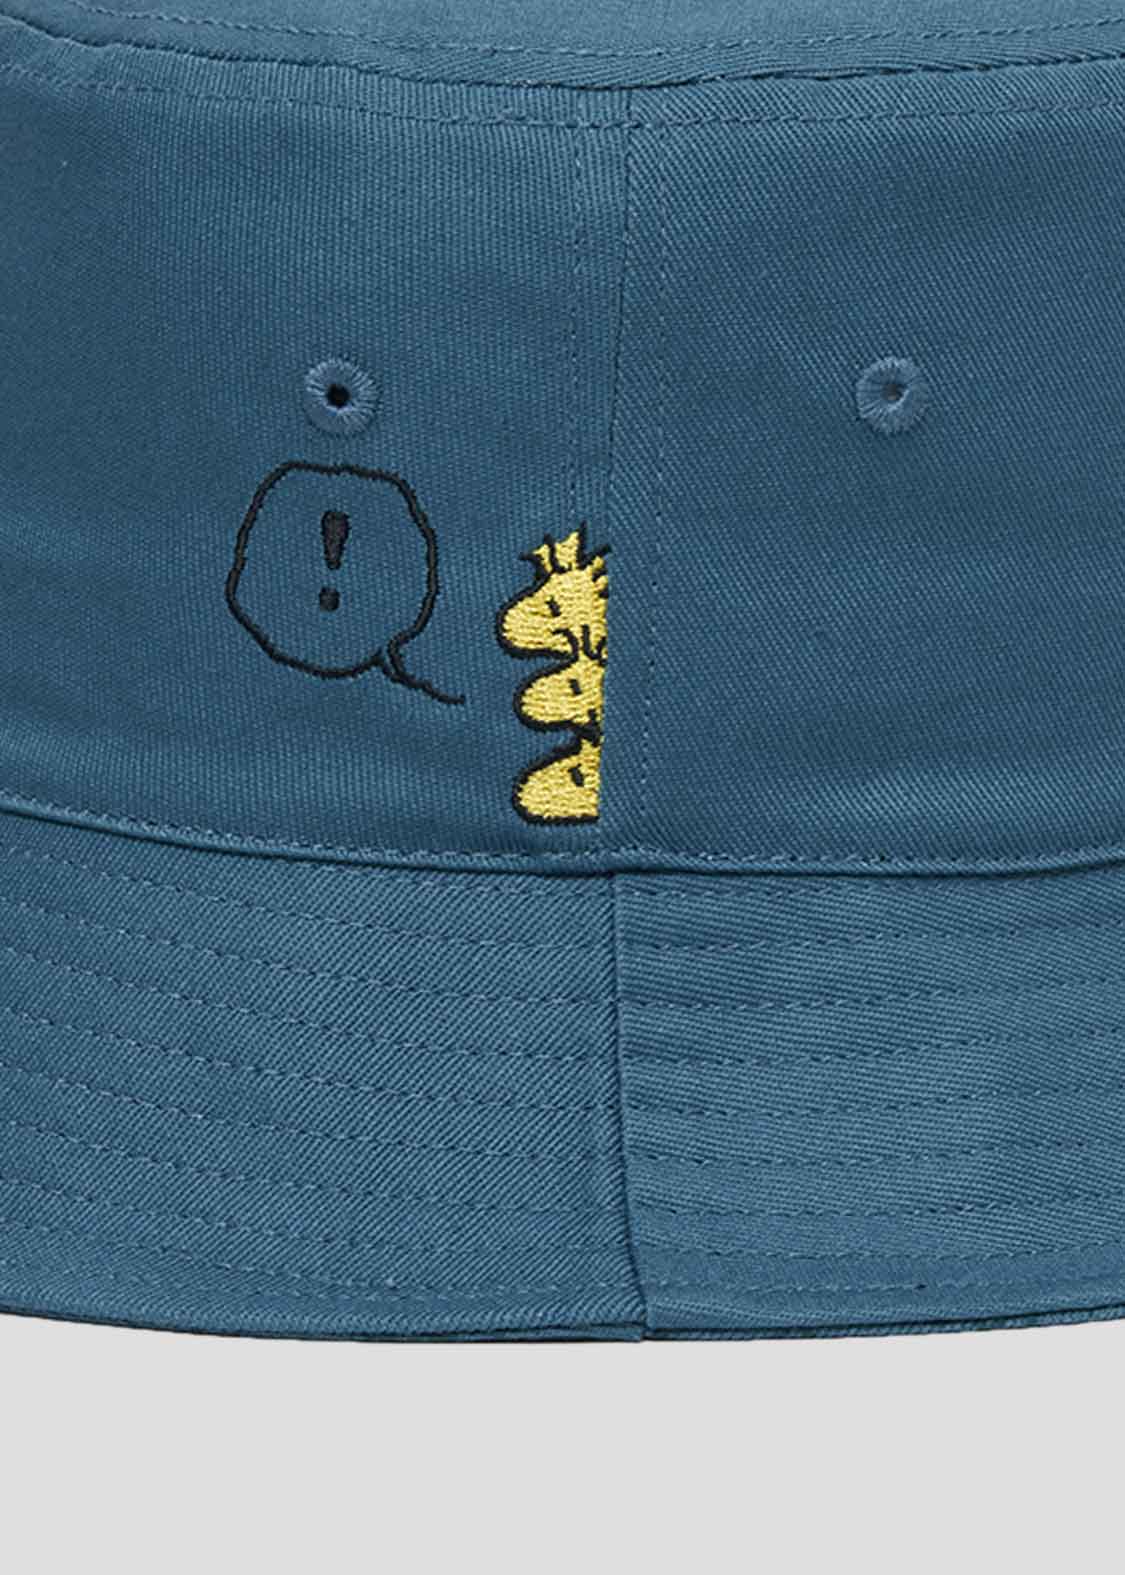 Peanuts Bucket Hat (Peanuts_KLUNK)